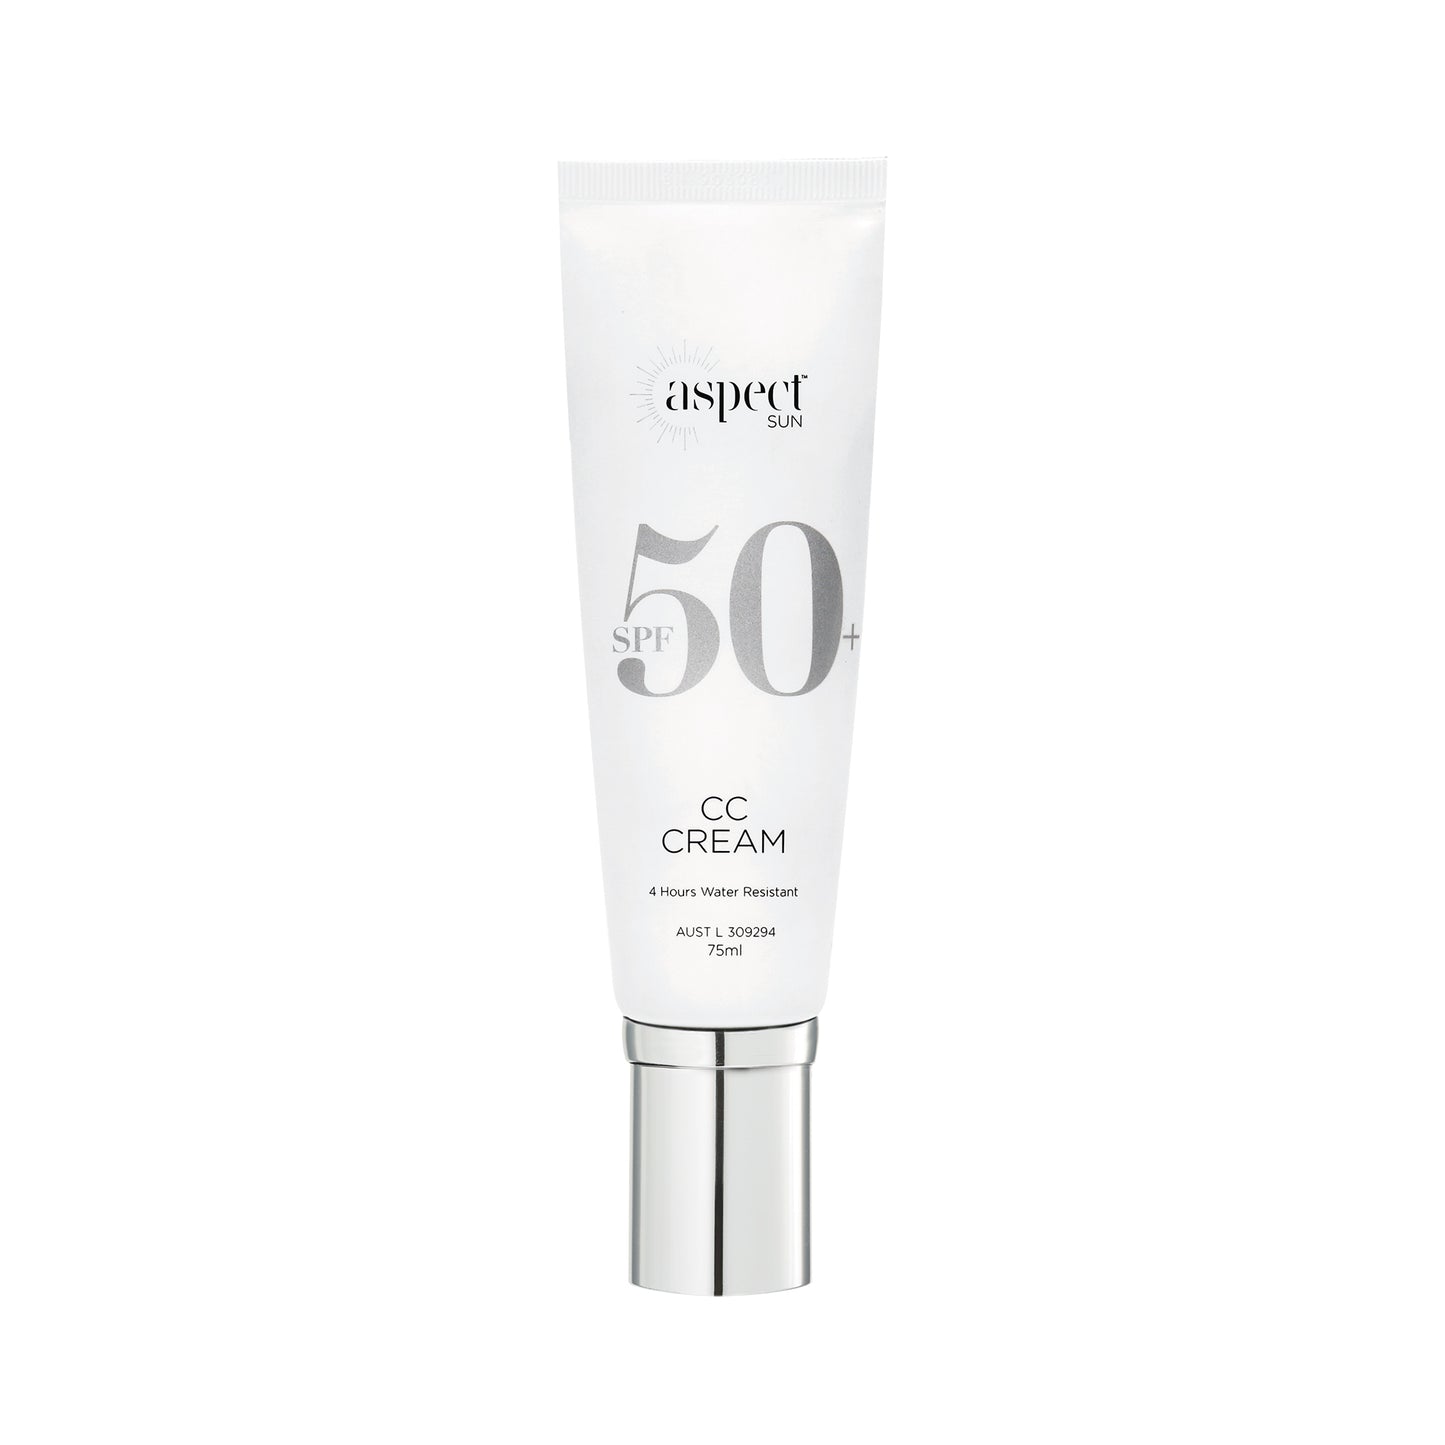 ASPECT Sun CC Cream SPF 50